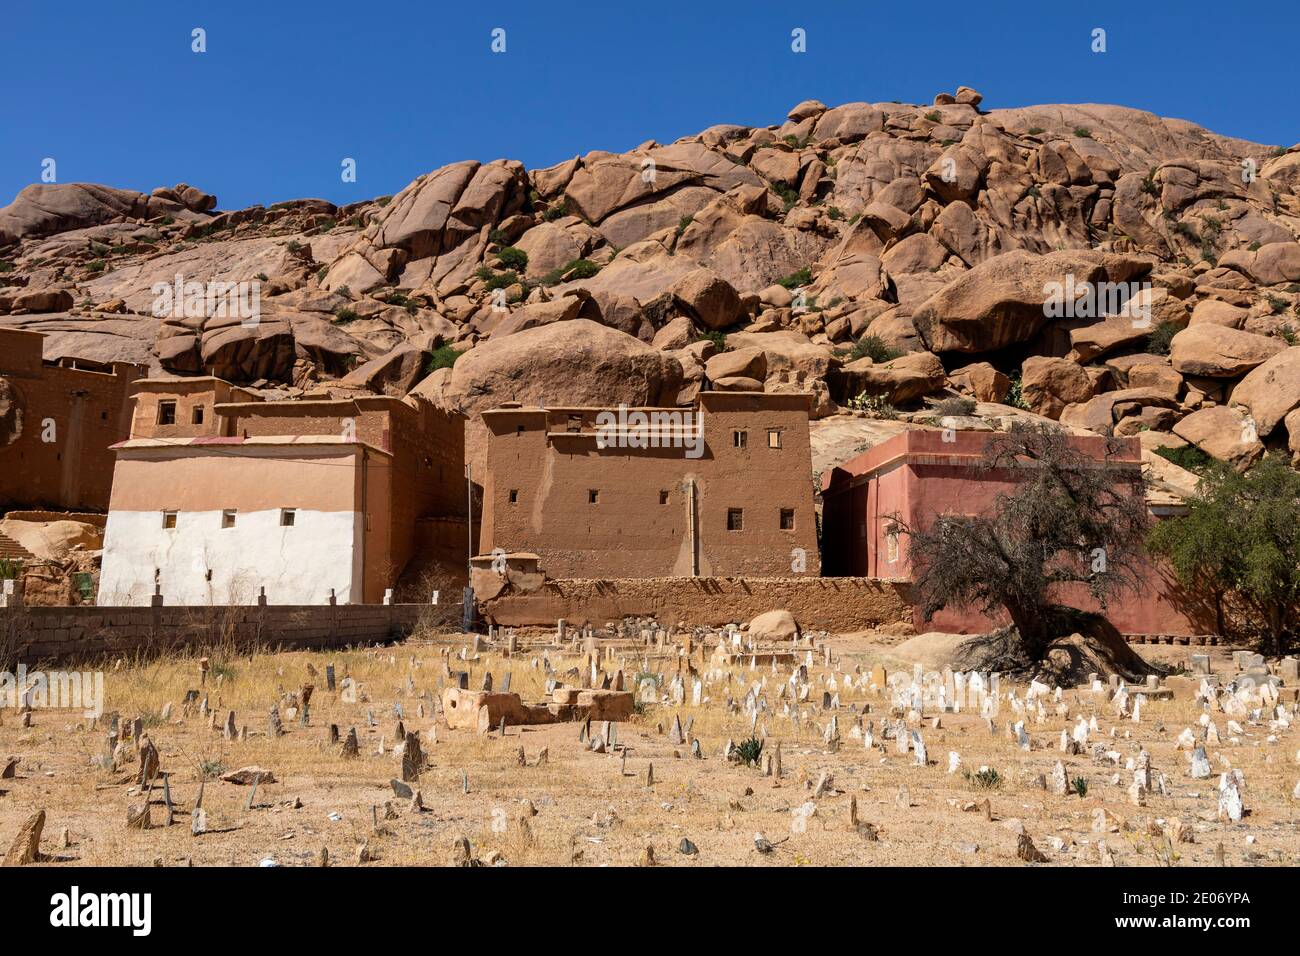 Anti-atlante, Marocco. 28 Feb 2020. Cimitero di fronte a case di fango ai piedi di grandi rocce il 28 febbraio 2020 a Tafraoute Anti-Atlas, Marocco. Foto Stock